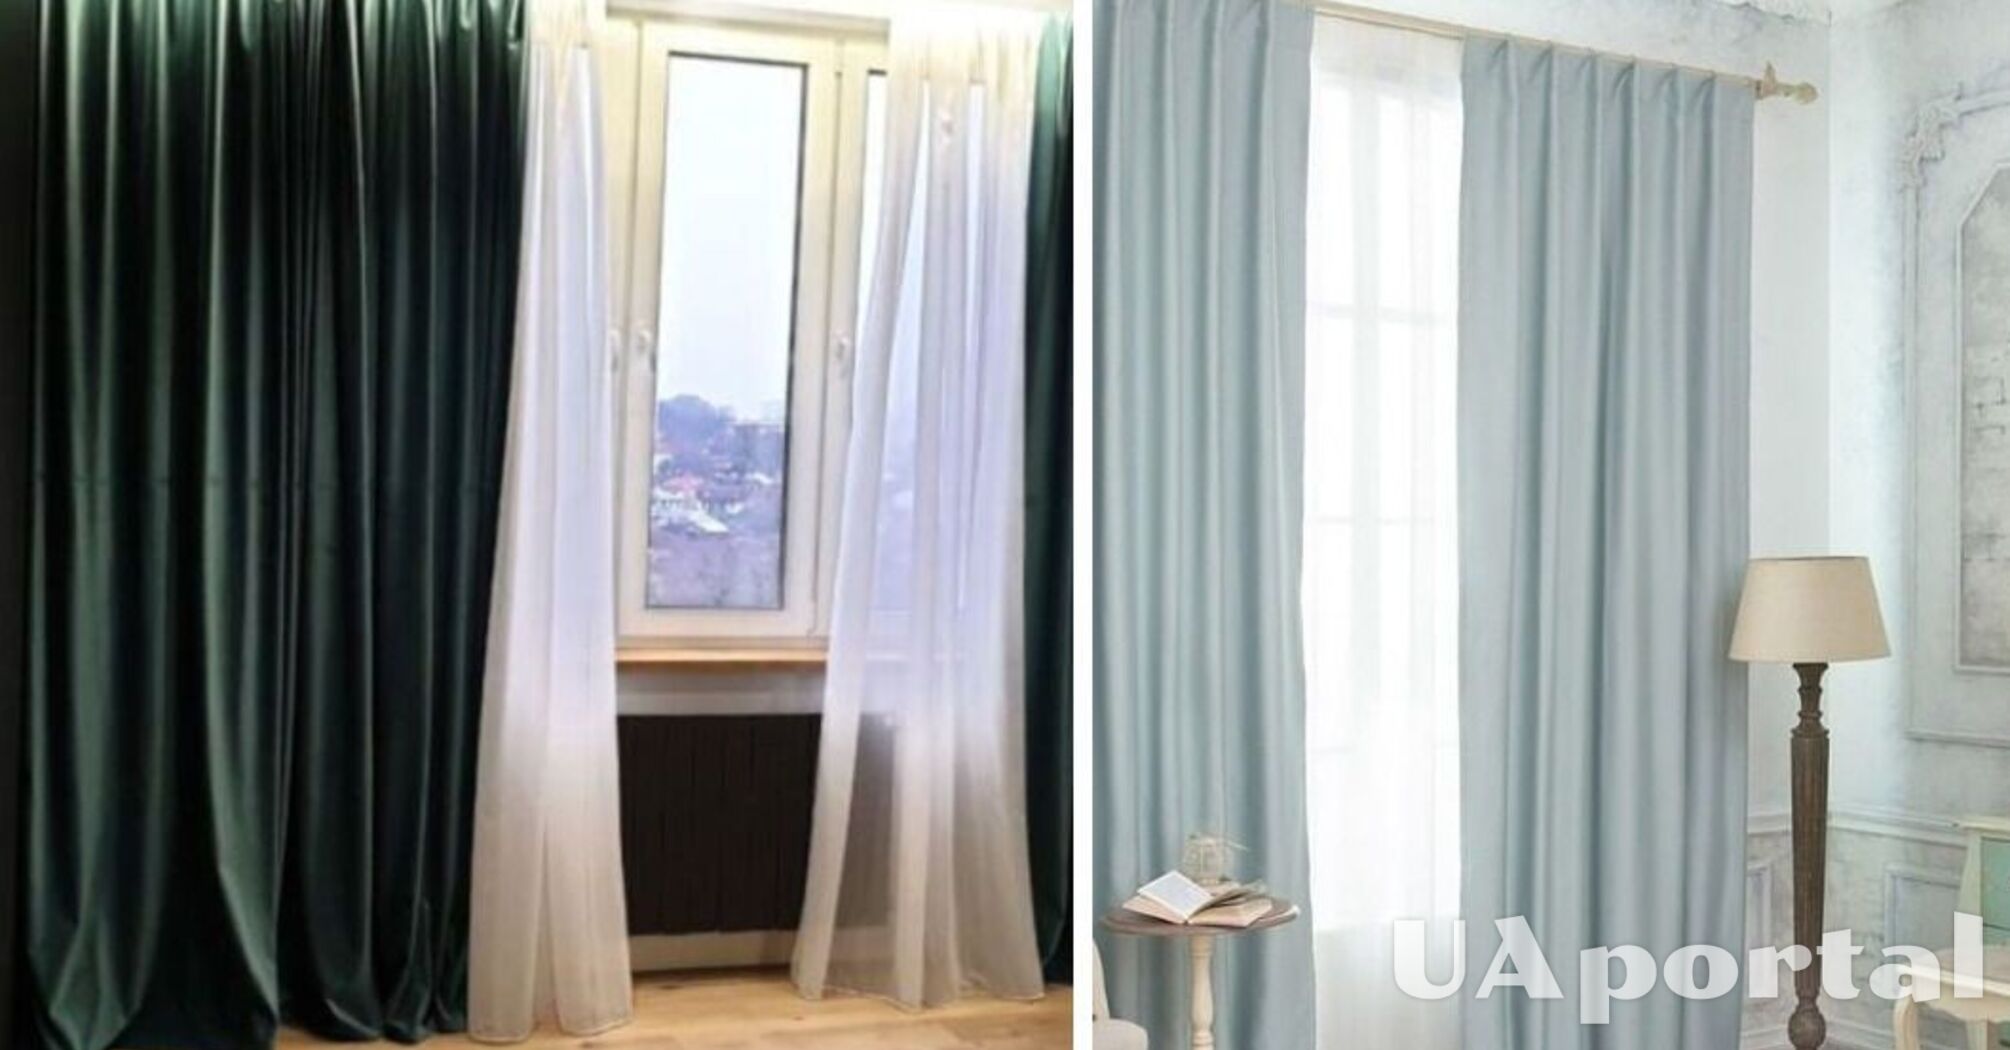 Какие шторы выбрать для дома, чтобы выглядело стильно: советы дизайнеров